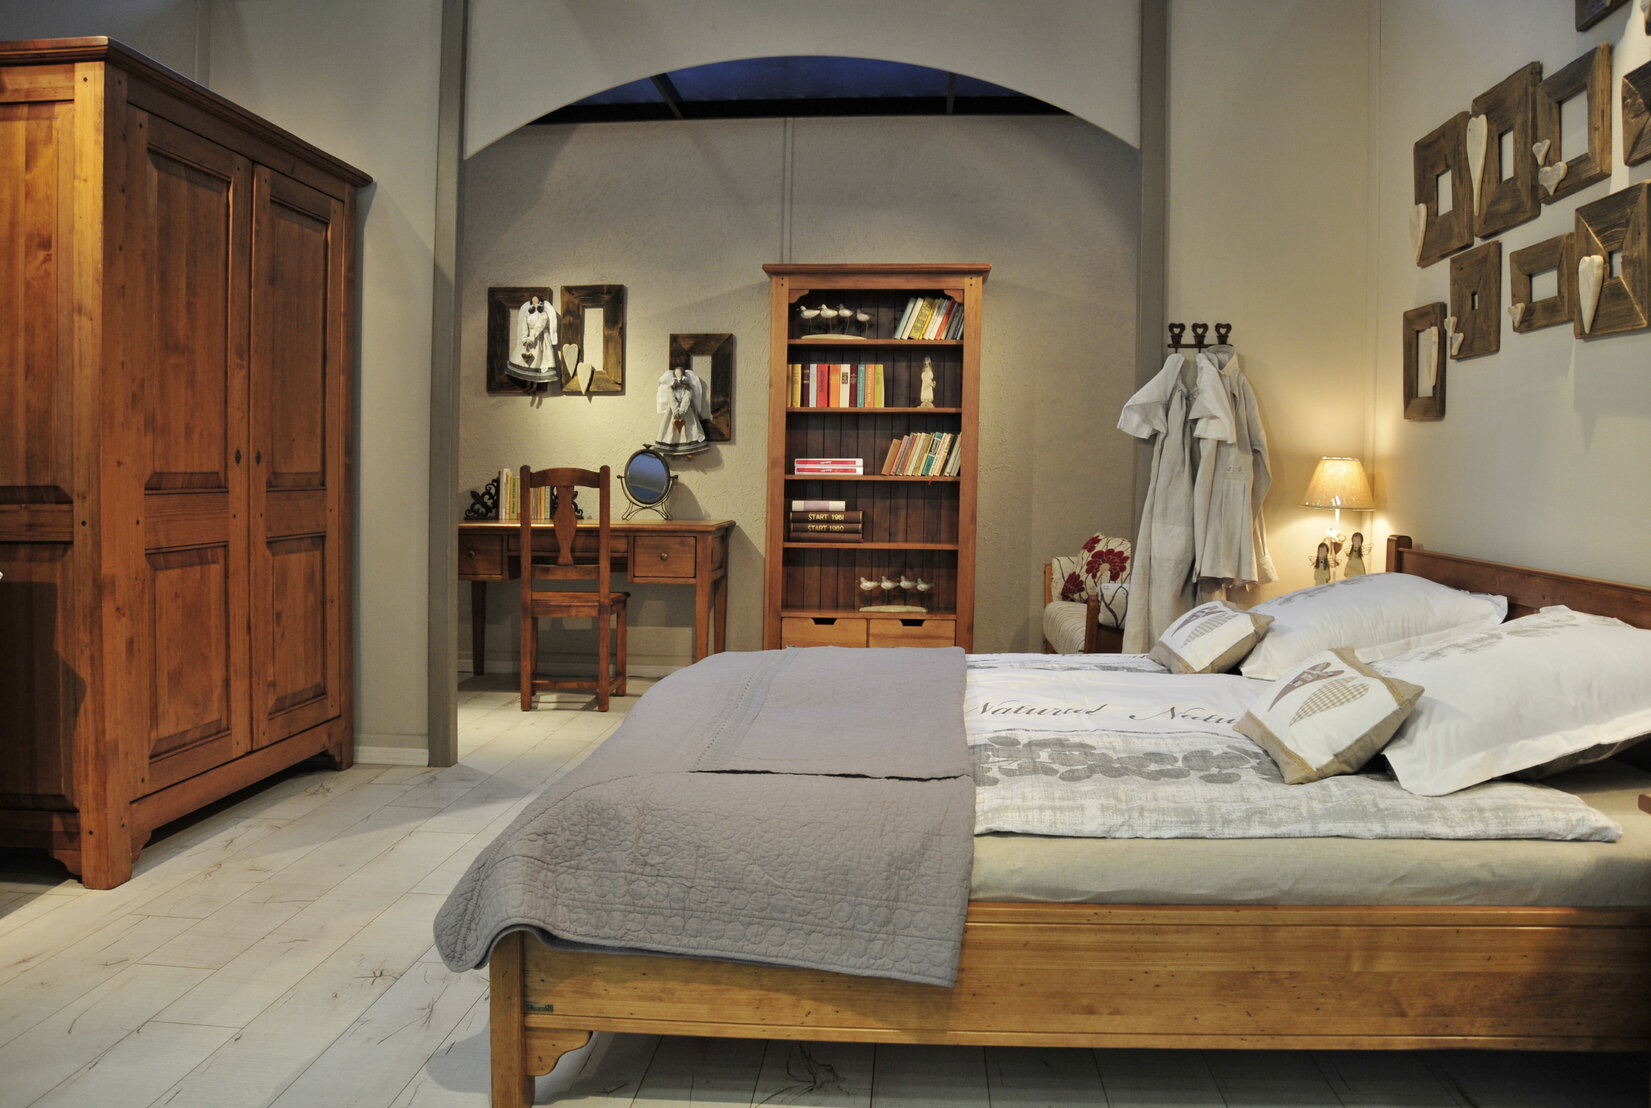 Spálňa v rustikálnom štýle s masívnym, dreveným nábytkom v hnedej farbe. Rustikálna posteľ je doplnená o posteľné obliečky v neutrálnej farbe. Rustikálny štýl spálne dopĺňa masívna, drevená skriňa a knižnica s knihami.